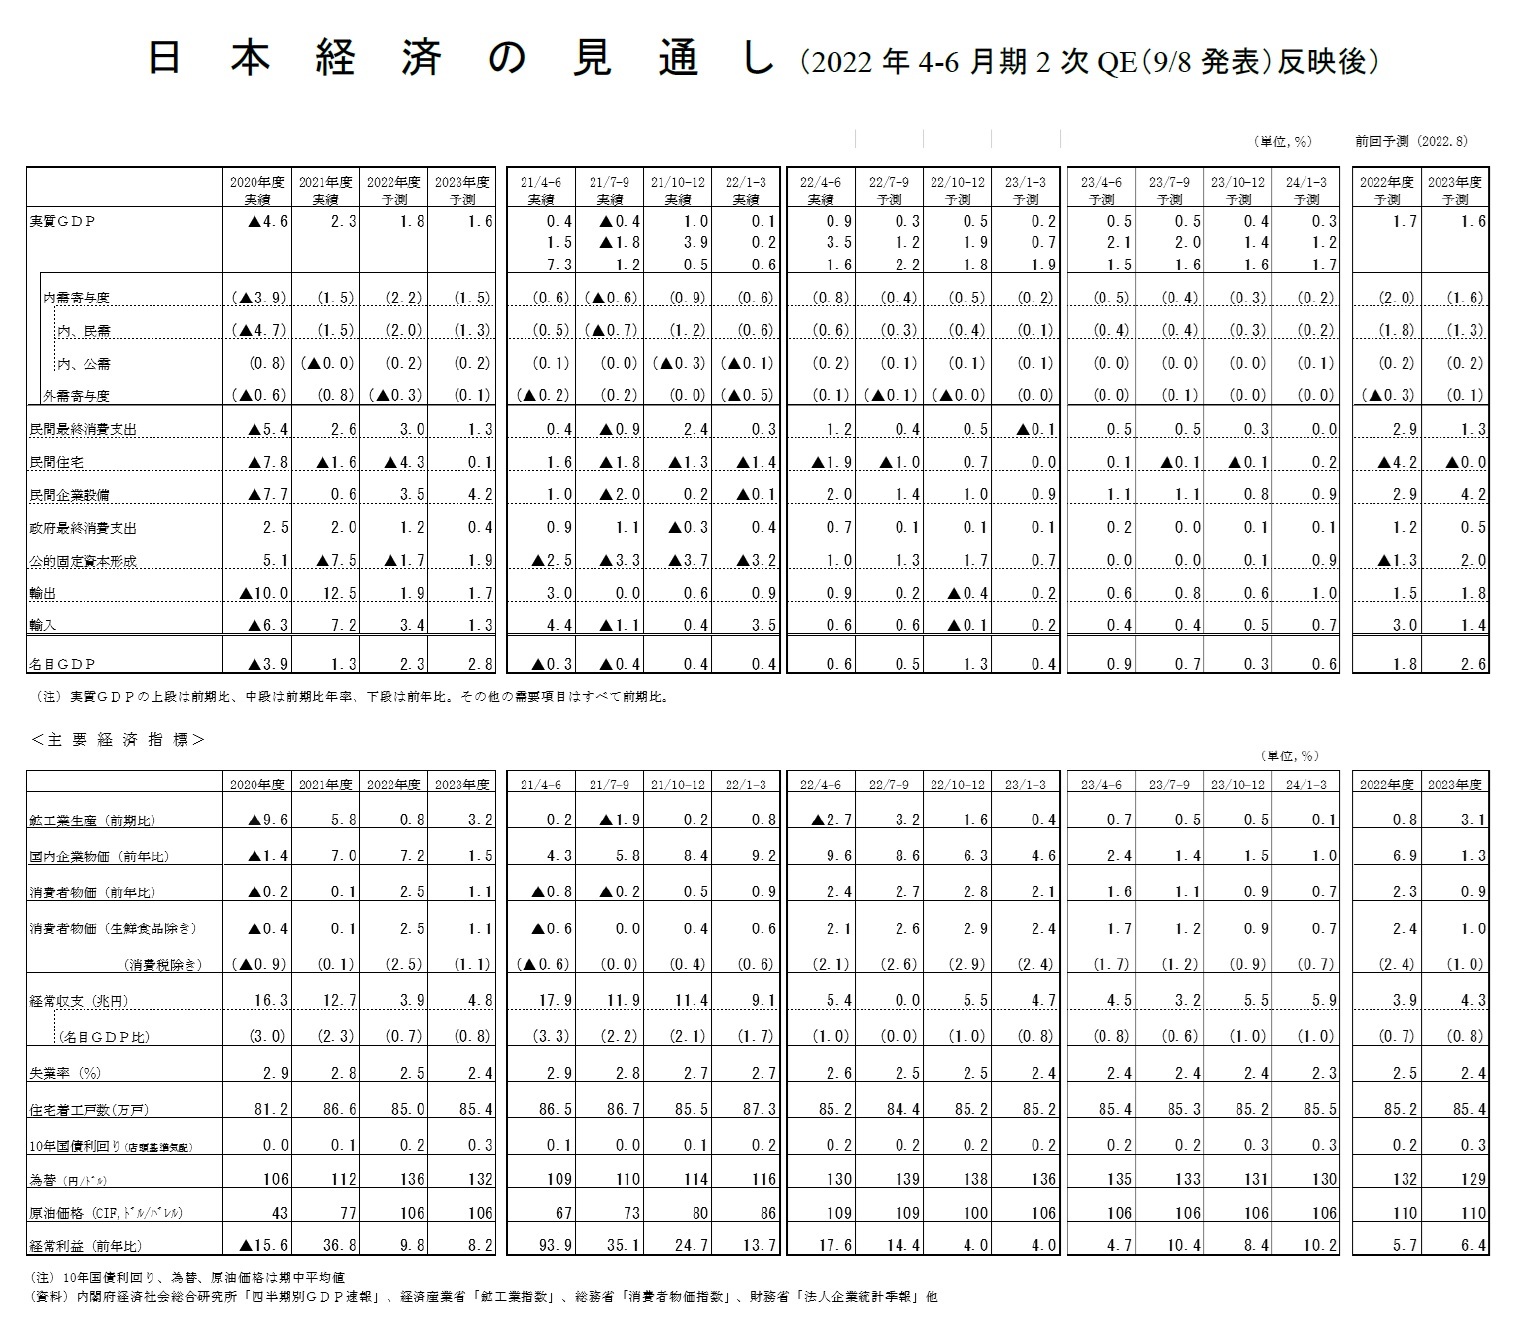 日本経済の見通し（2022年4-6月期2次QE（9/8 発表）反映後）